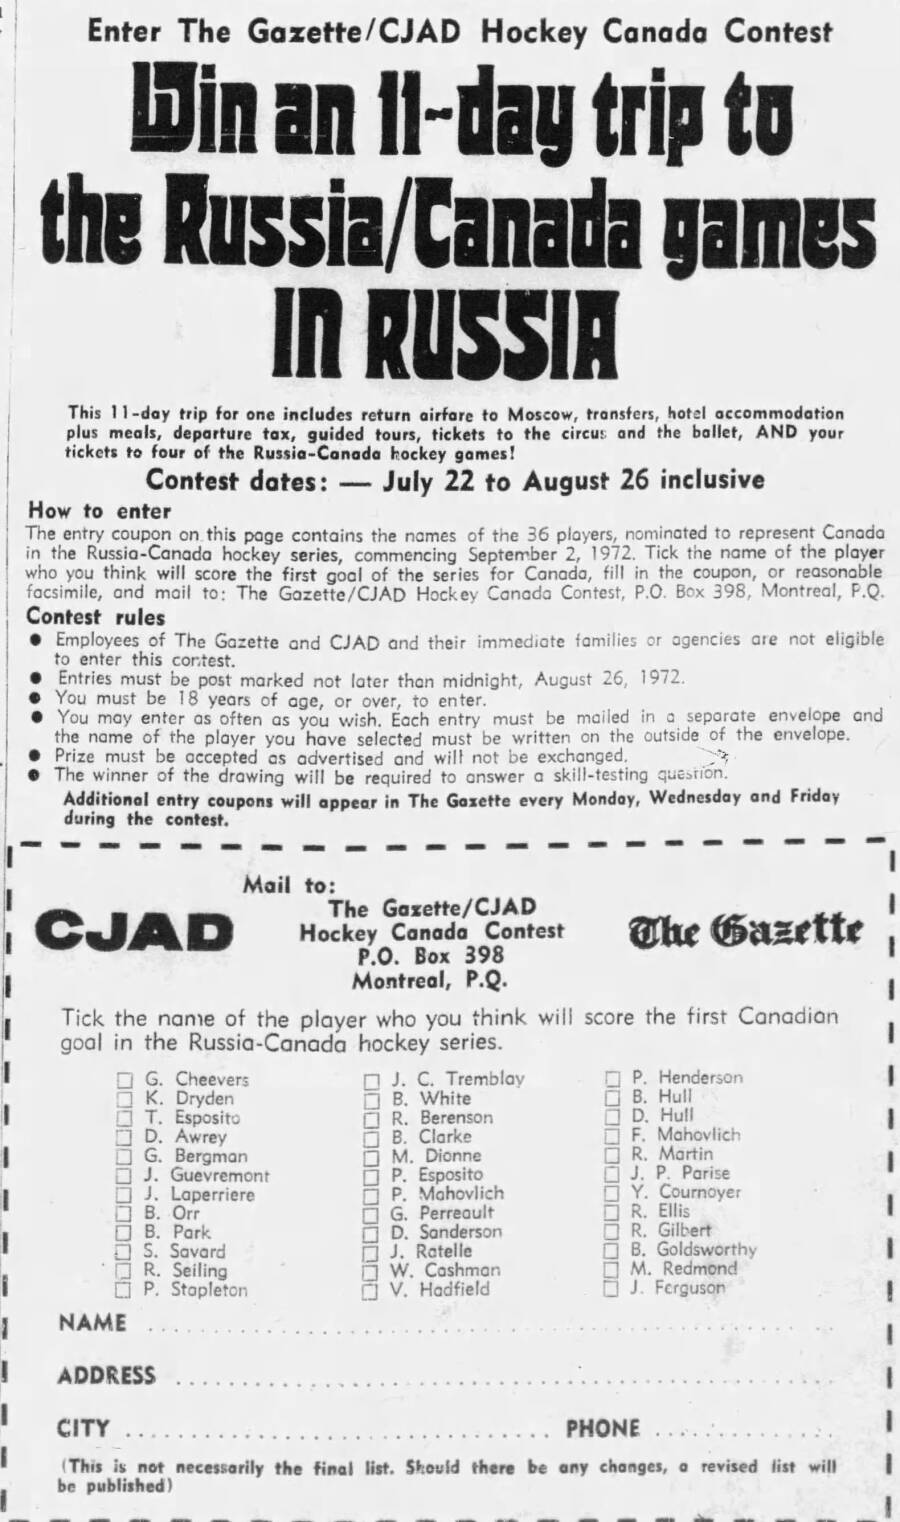 Лотерейный купон (The Gazette, Montreal) розыгрыша туристических путёвок (11 дней) для болельщиков на Московскую часть серии матчей Канада – СССР в сентябре 1972 г.